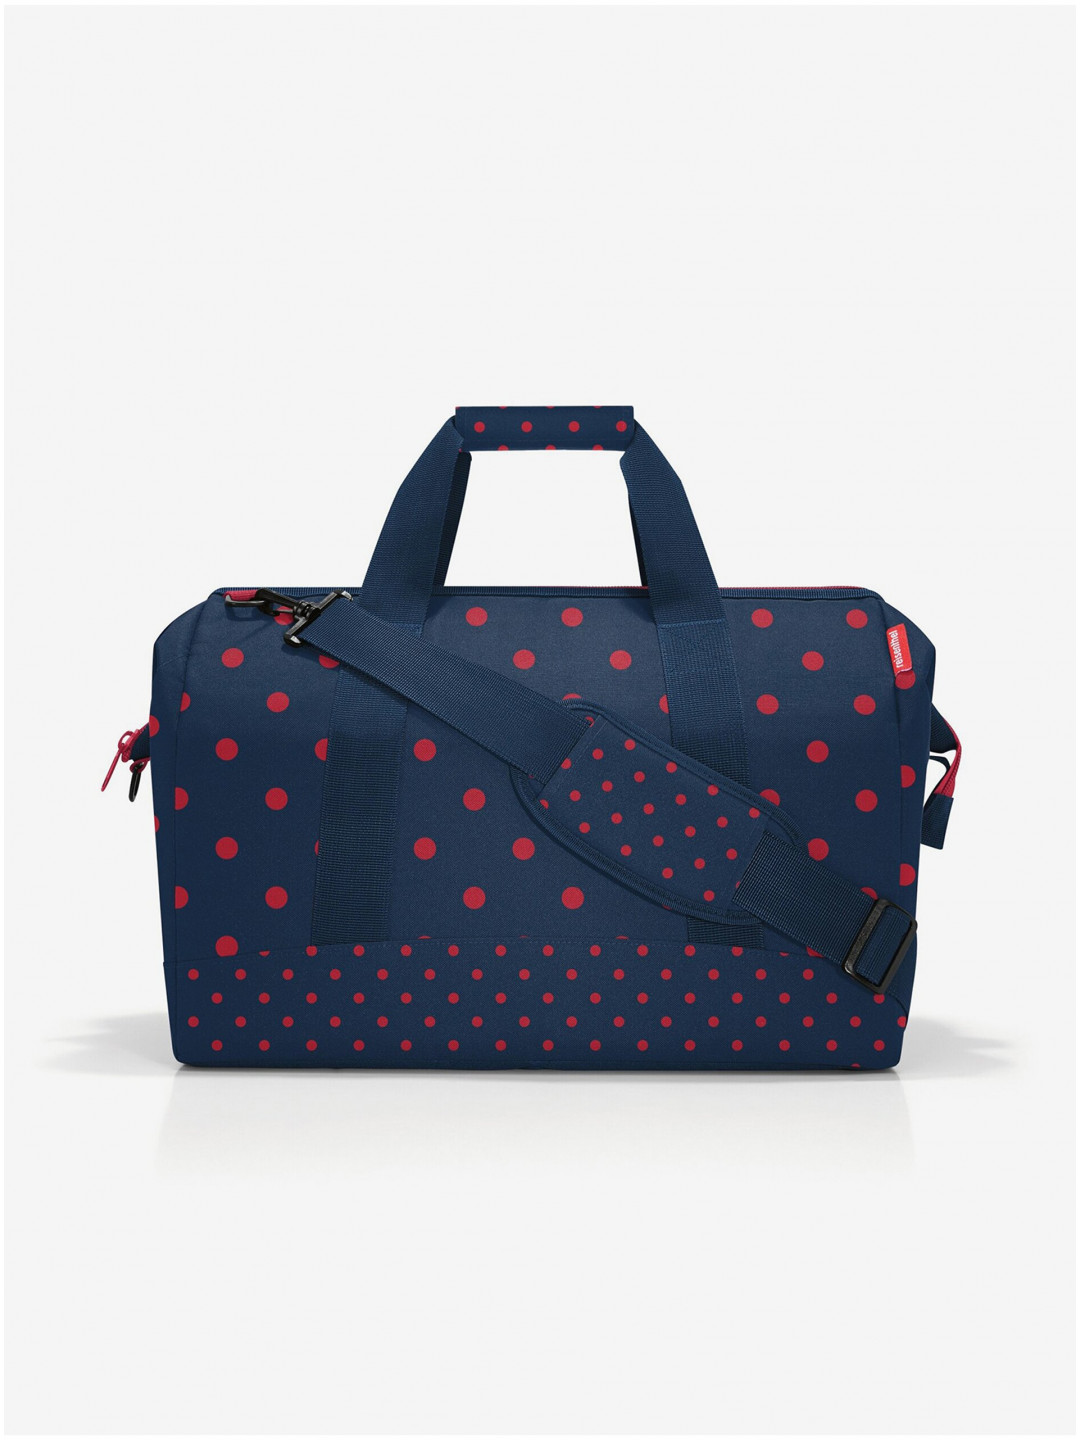 Tmavě modrá dámská puntíkovaná cestovní taška Reisenthel Allrounder L Mixed Dots Red